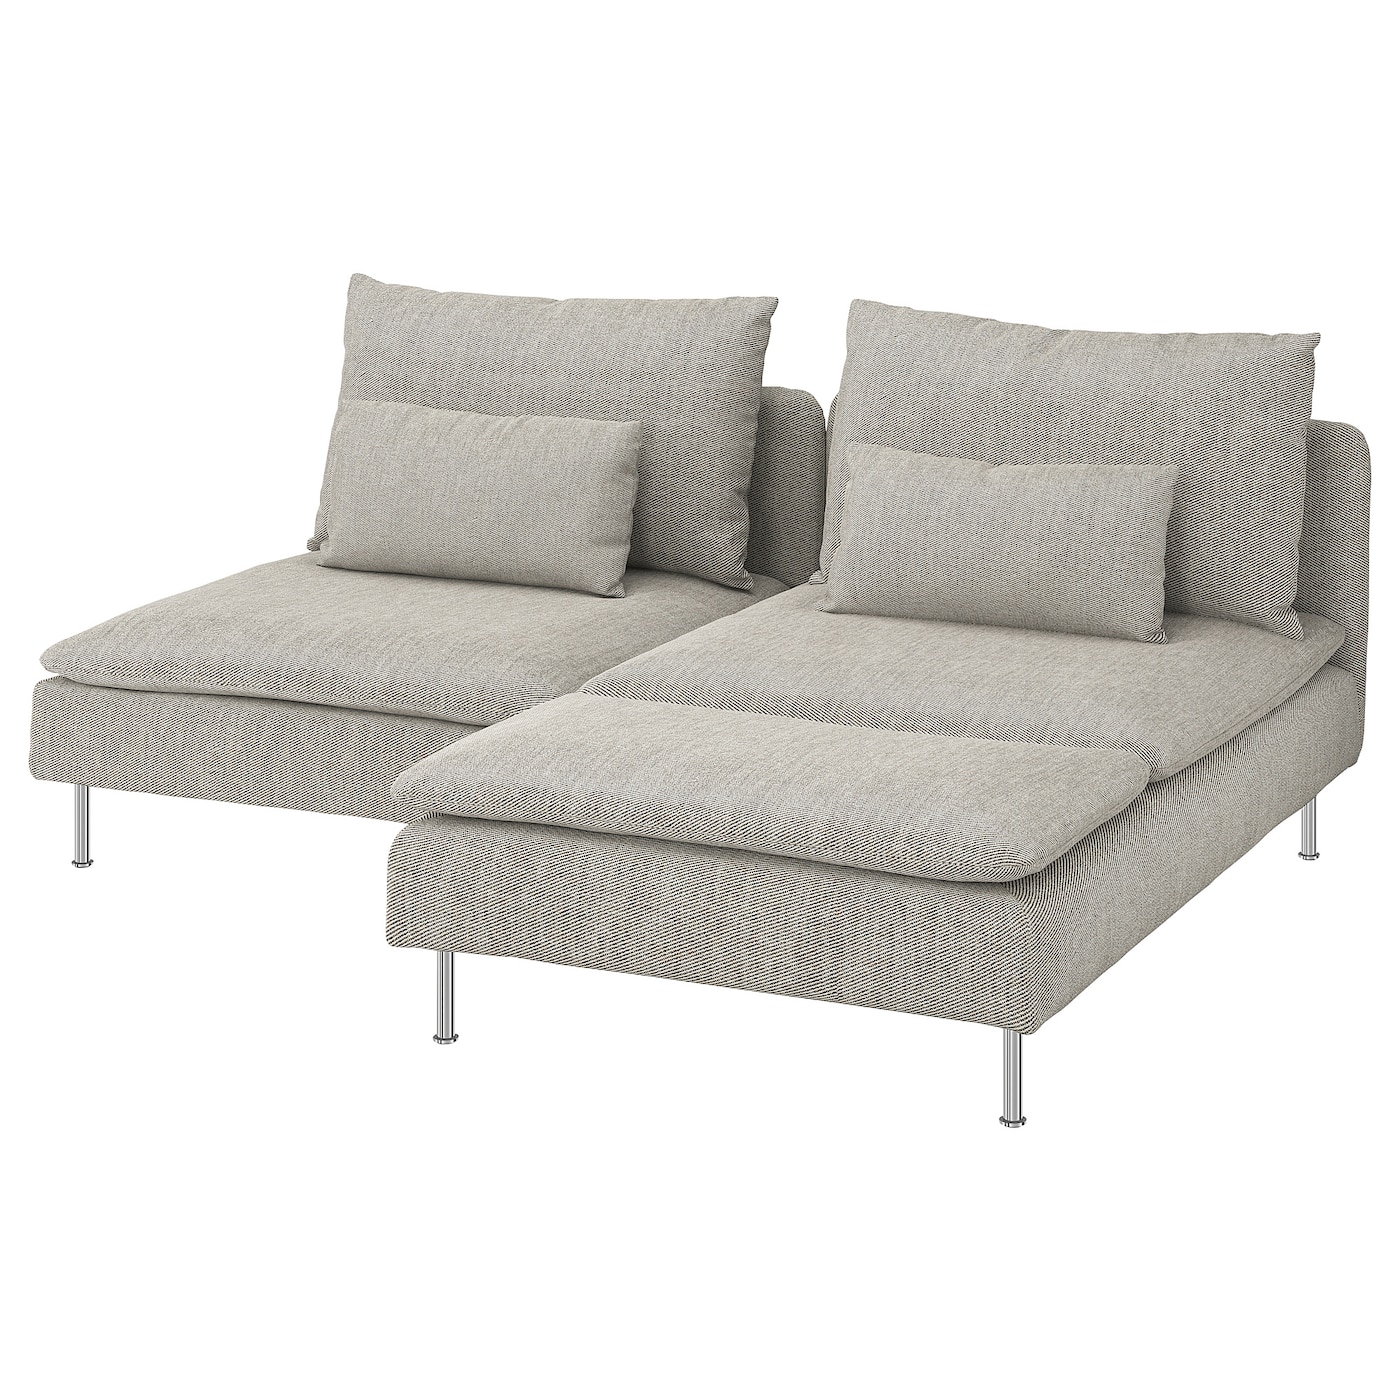 2-местный диван - IKEA SÖDERHAMN/SODERHAMN, 99x186см, серый/светло-серый, СЕДЕРХАМН ИКЕА